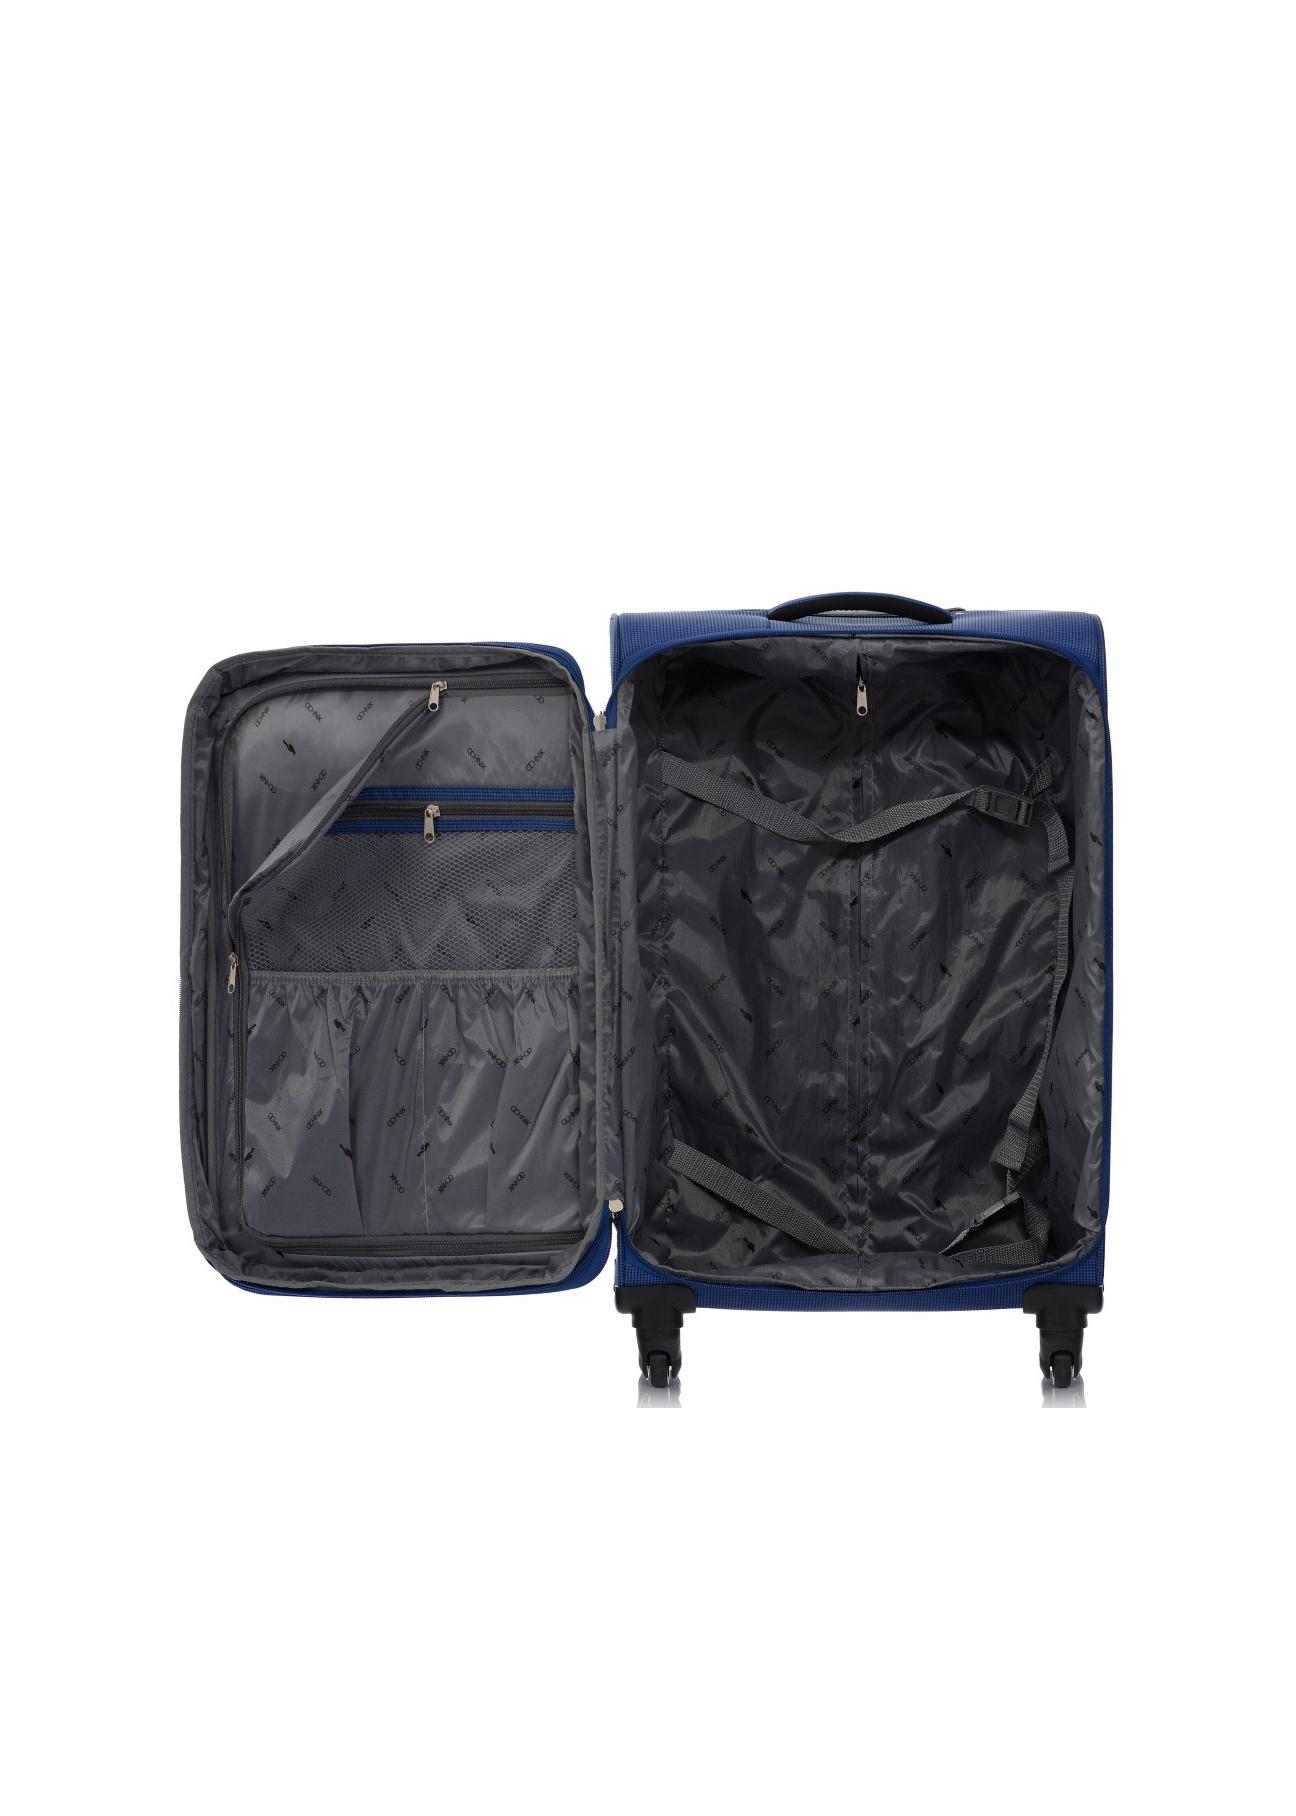 Średnia walizka na kółkach WALNY-0025-69-24